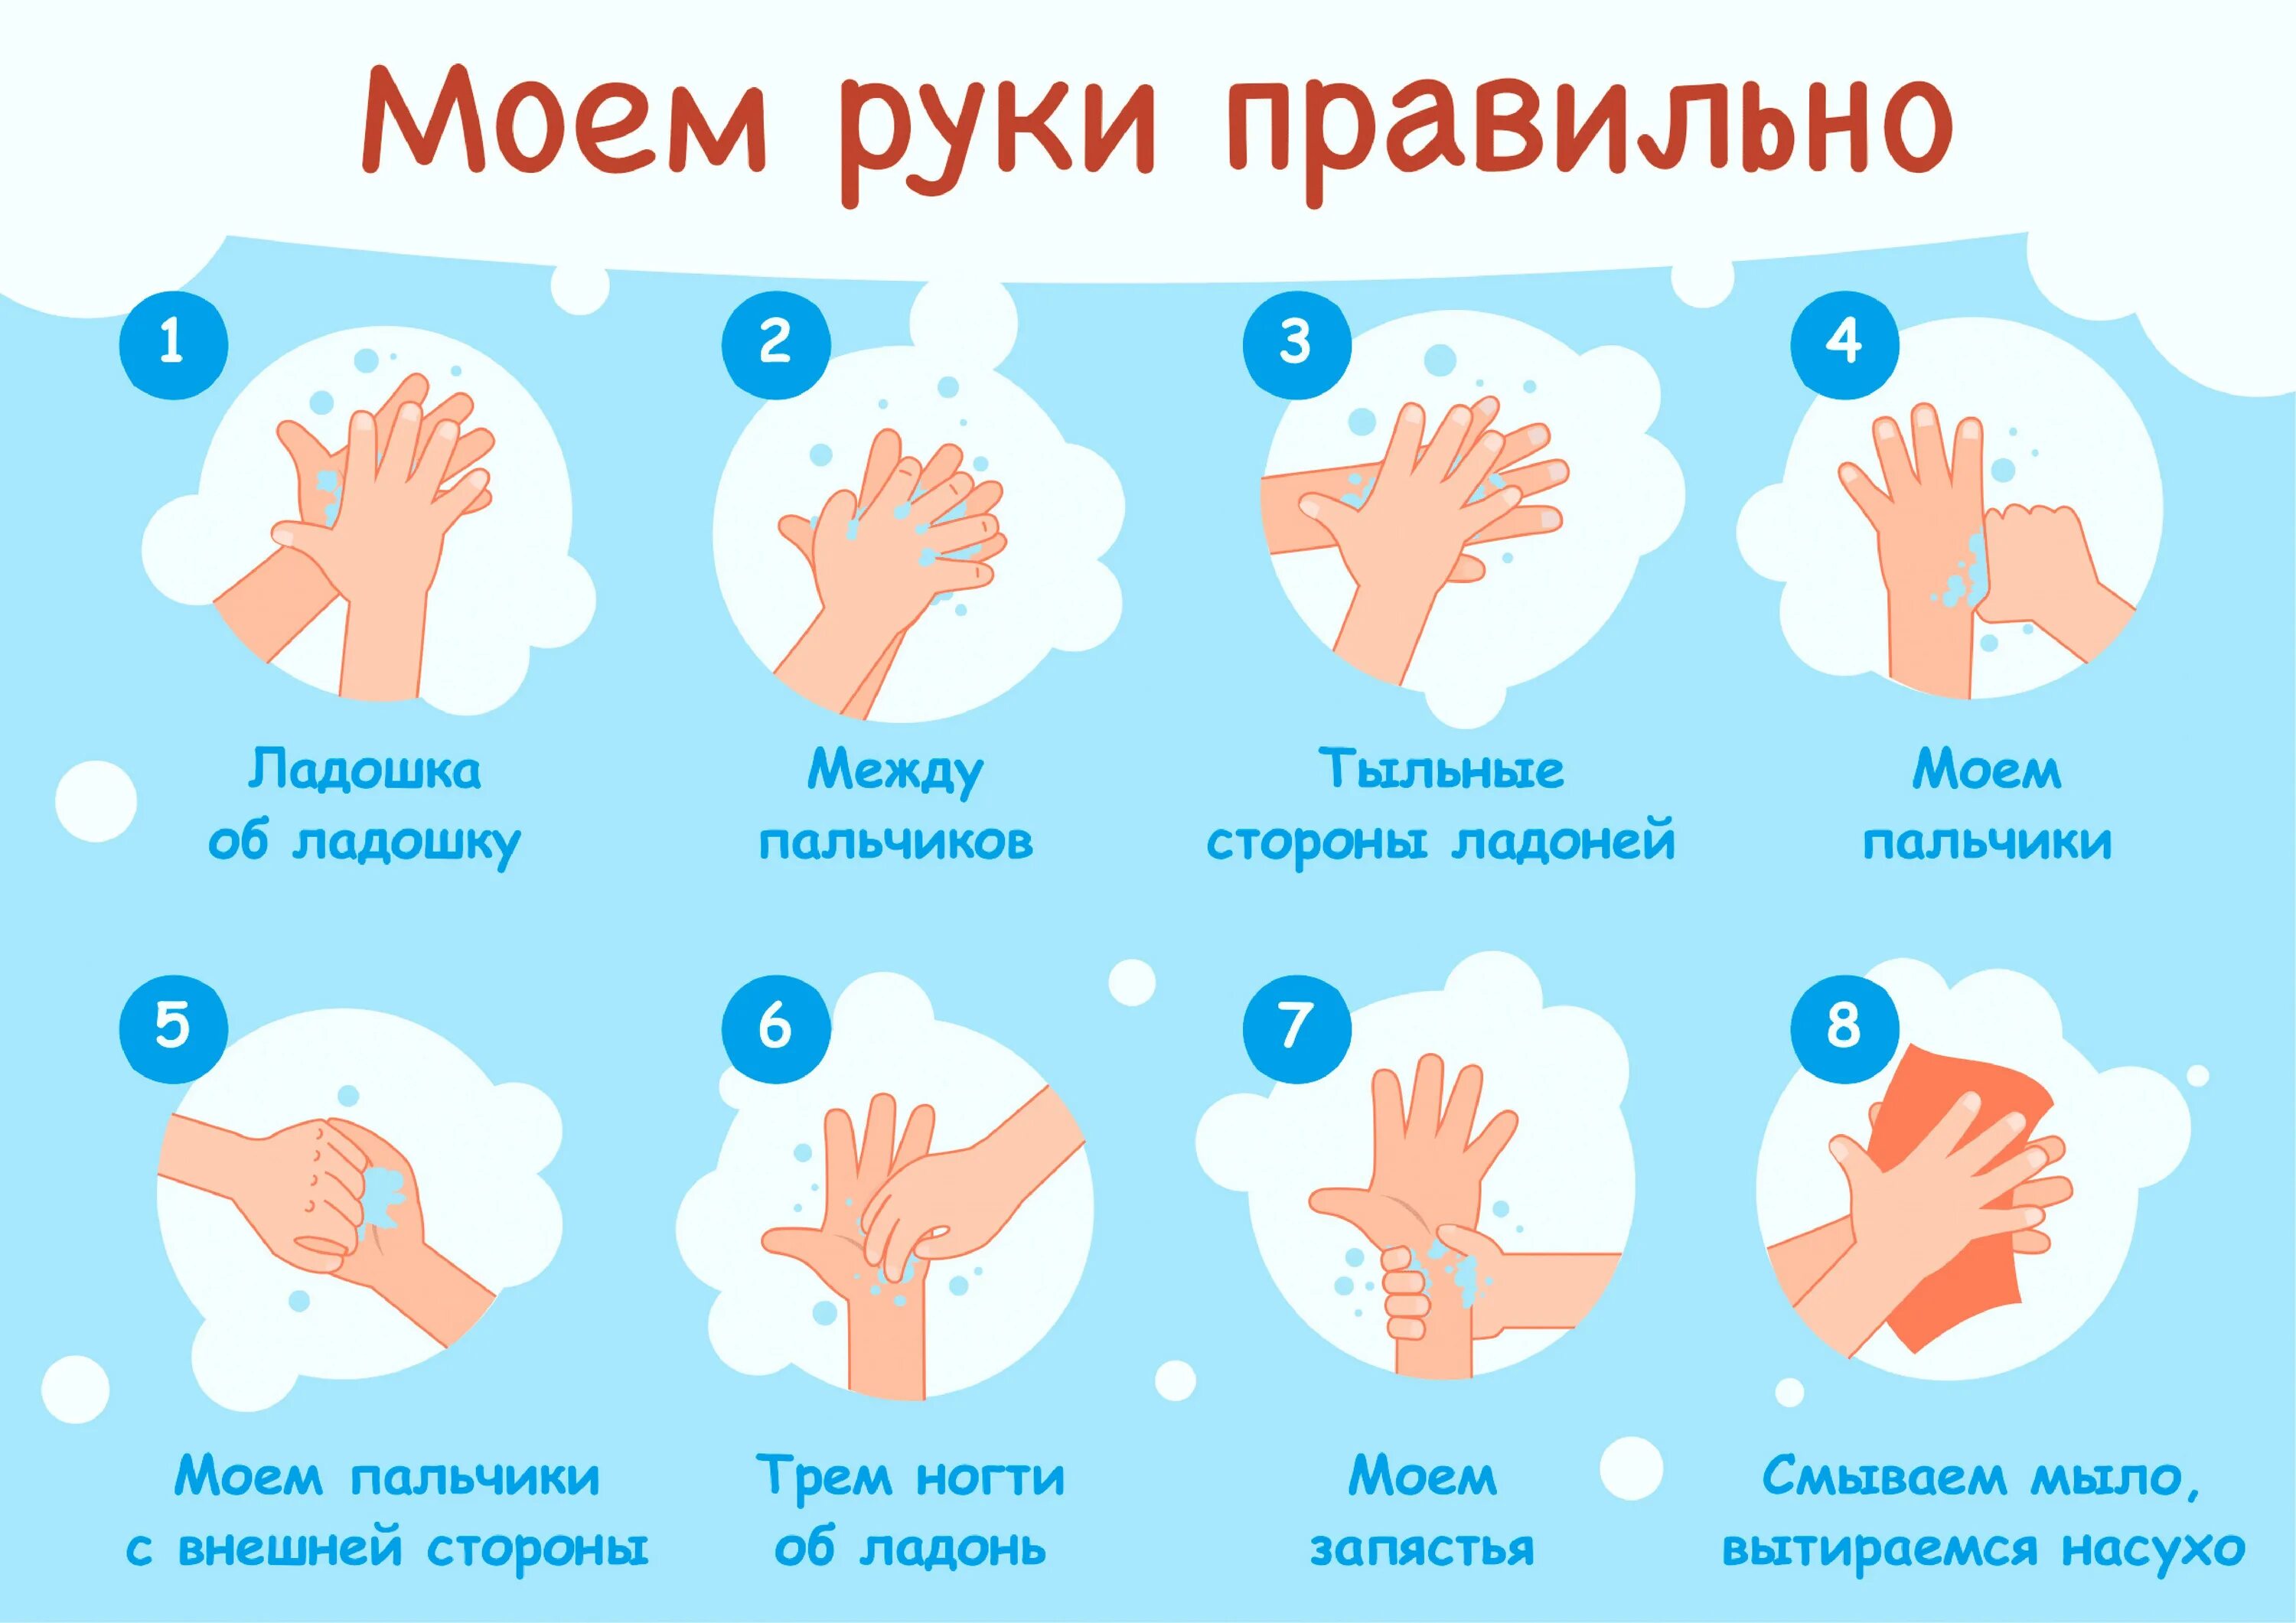 Руки мыть руки ы. Мытьё рук. Алгоритм мытья рук. Как правильн Оымт ьруки. КККМ правильн омыть руки. Мытье рук дошкольников.